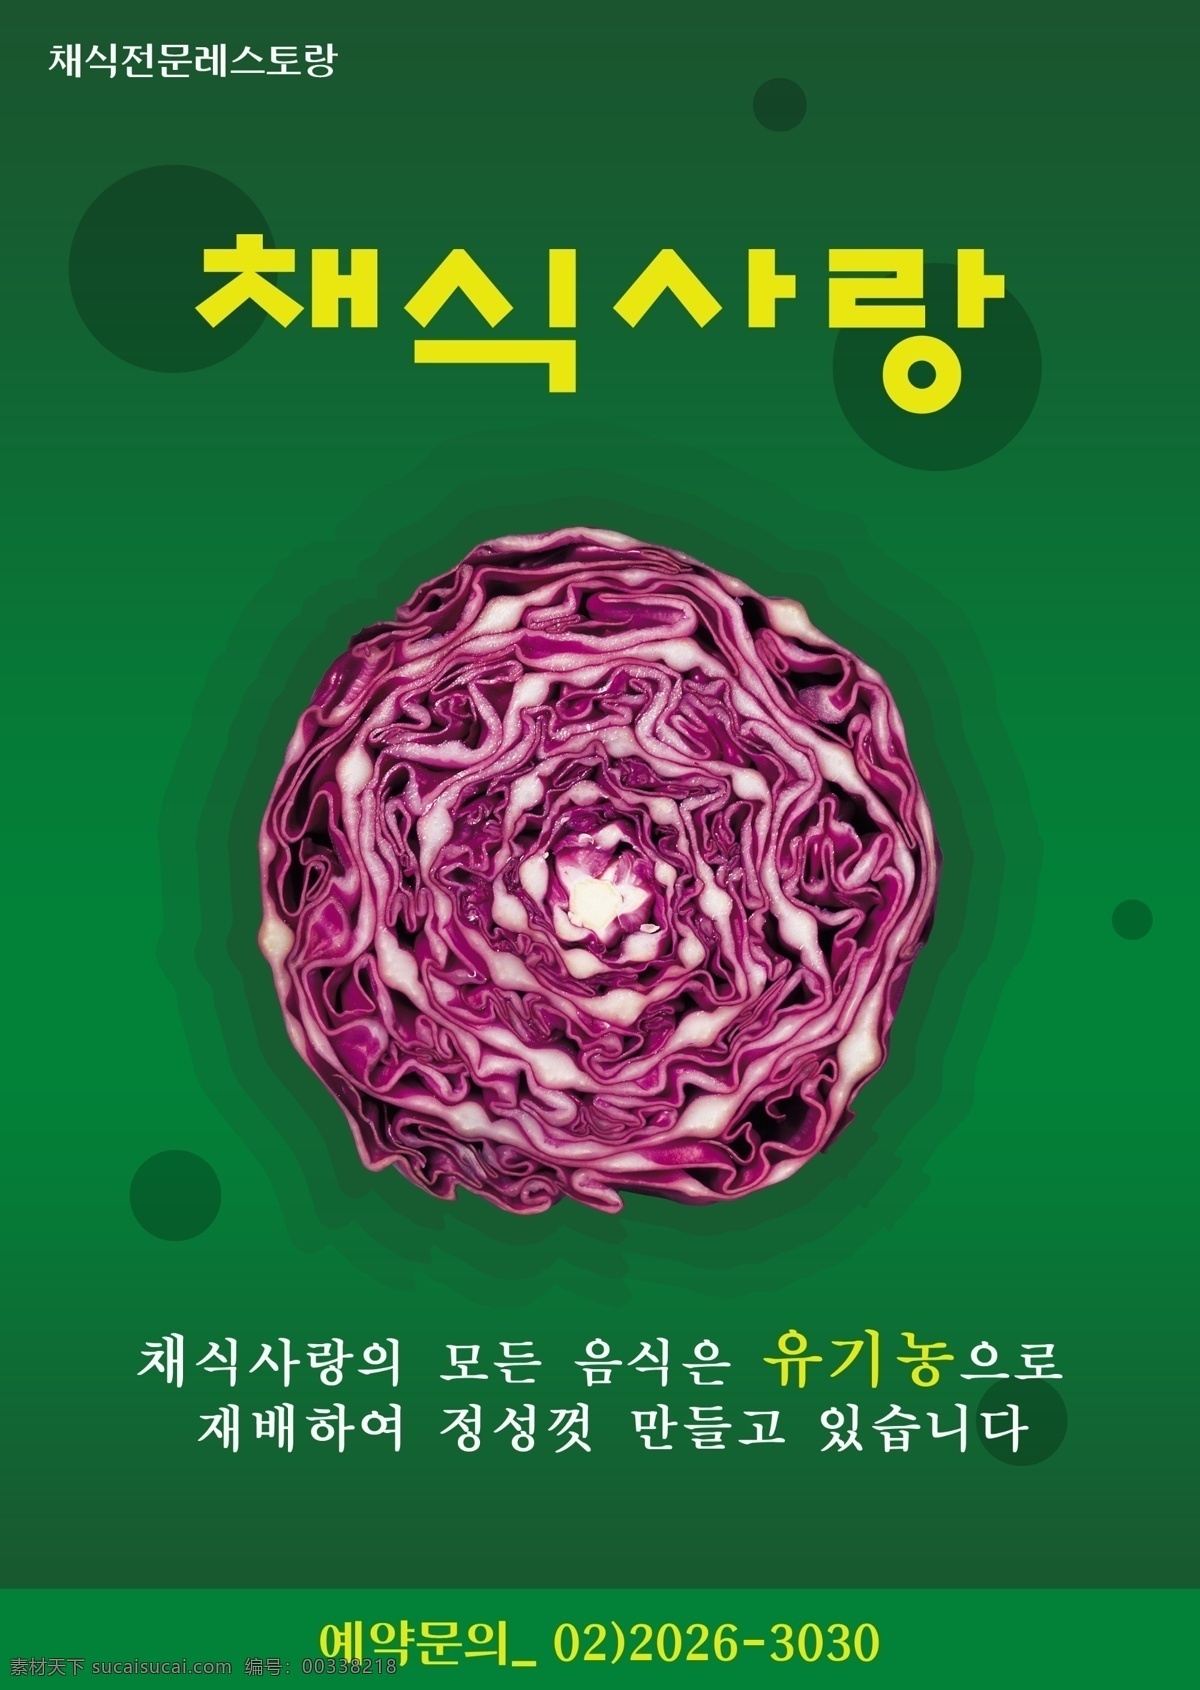 卷心菜 韩国 海报 psd素材 韩国海报 韩国料理 美食 其他海报设计